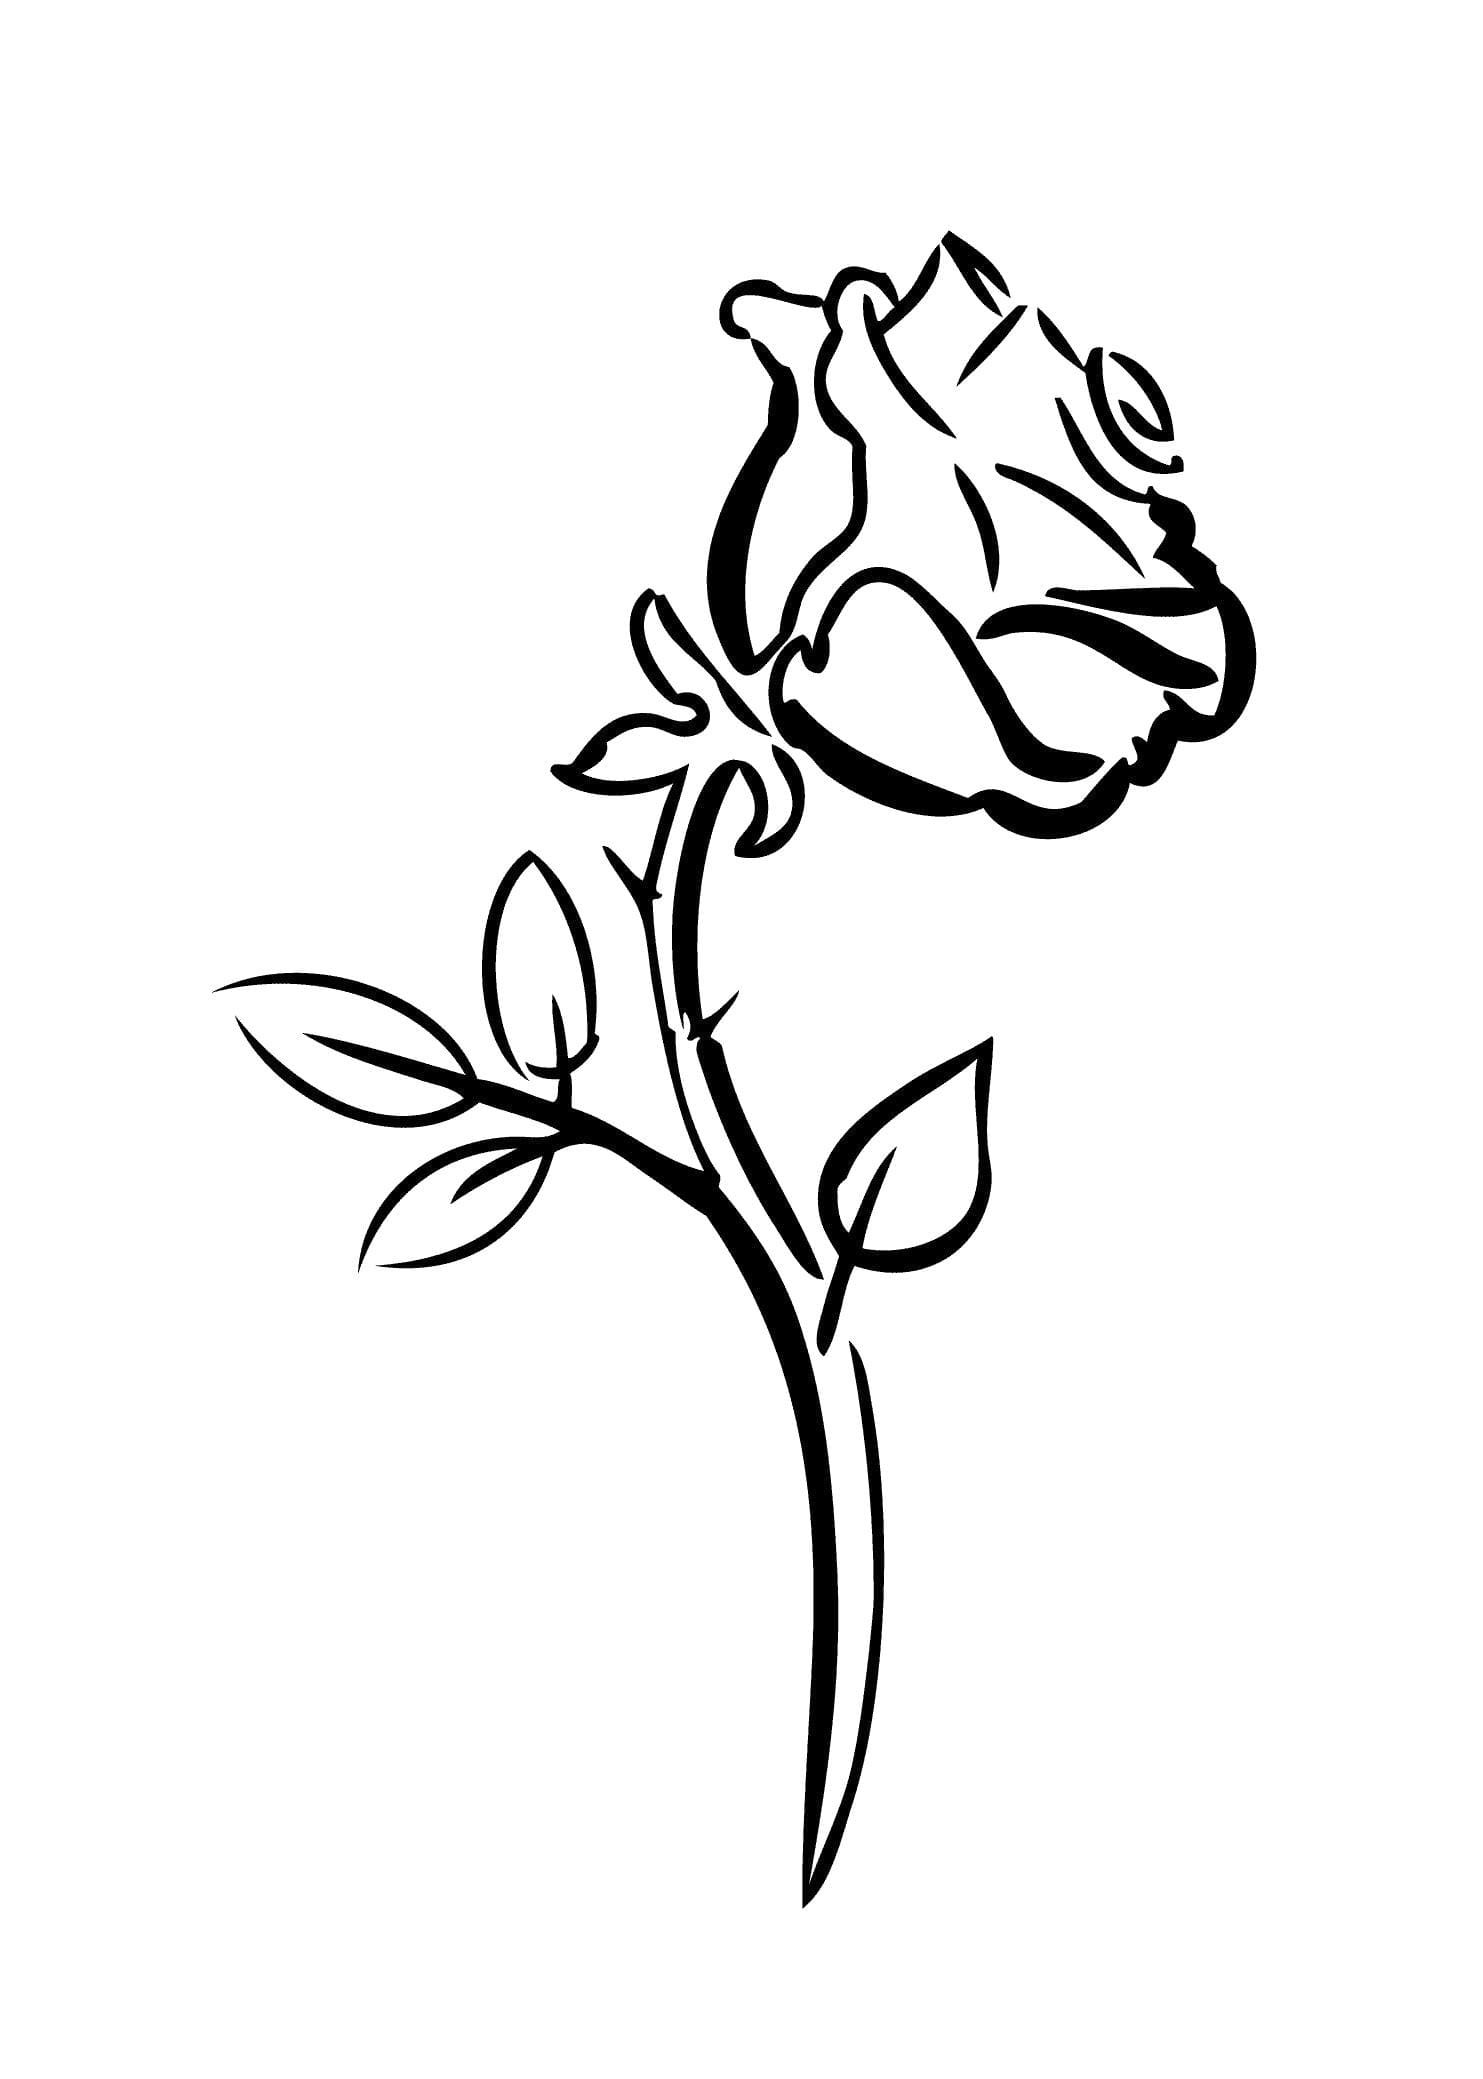 Coloriage Rose - Imprimer la reine des fleurs en ligne